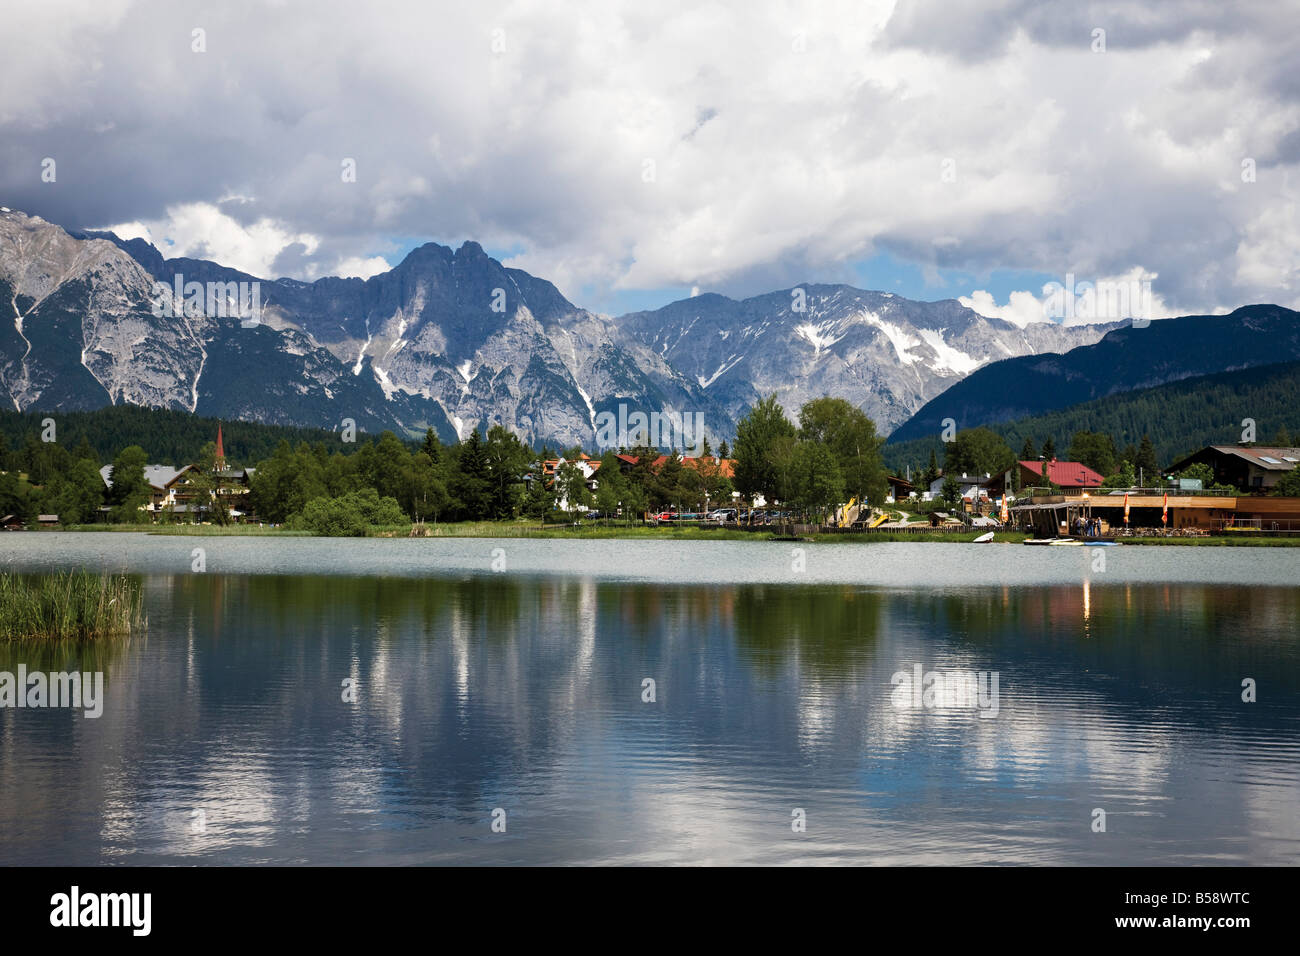 Austria, Tyrol, Seefeld, Wildsee Stock Photo